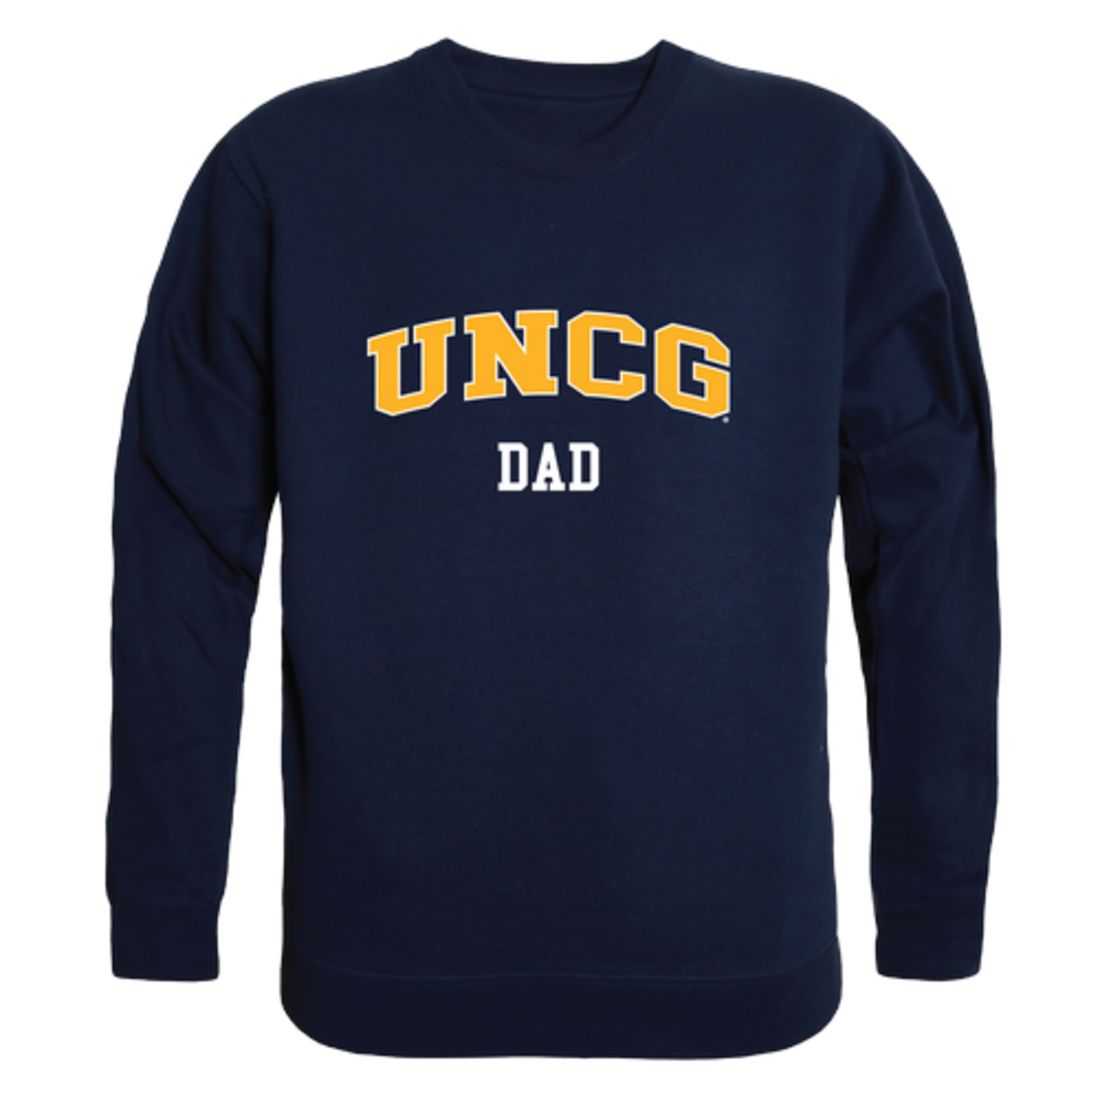 UNCG University of North Carolina at Greensboro Spartans Dad Fleece Crewneck Pullover Sweatshirt Heather Grey-Campus-Wardrobe